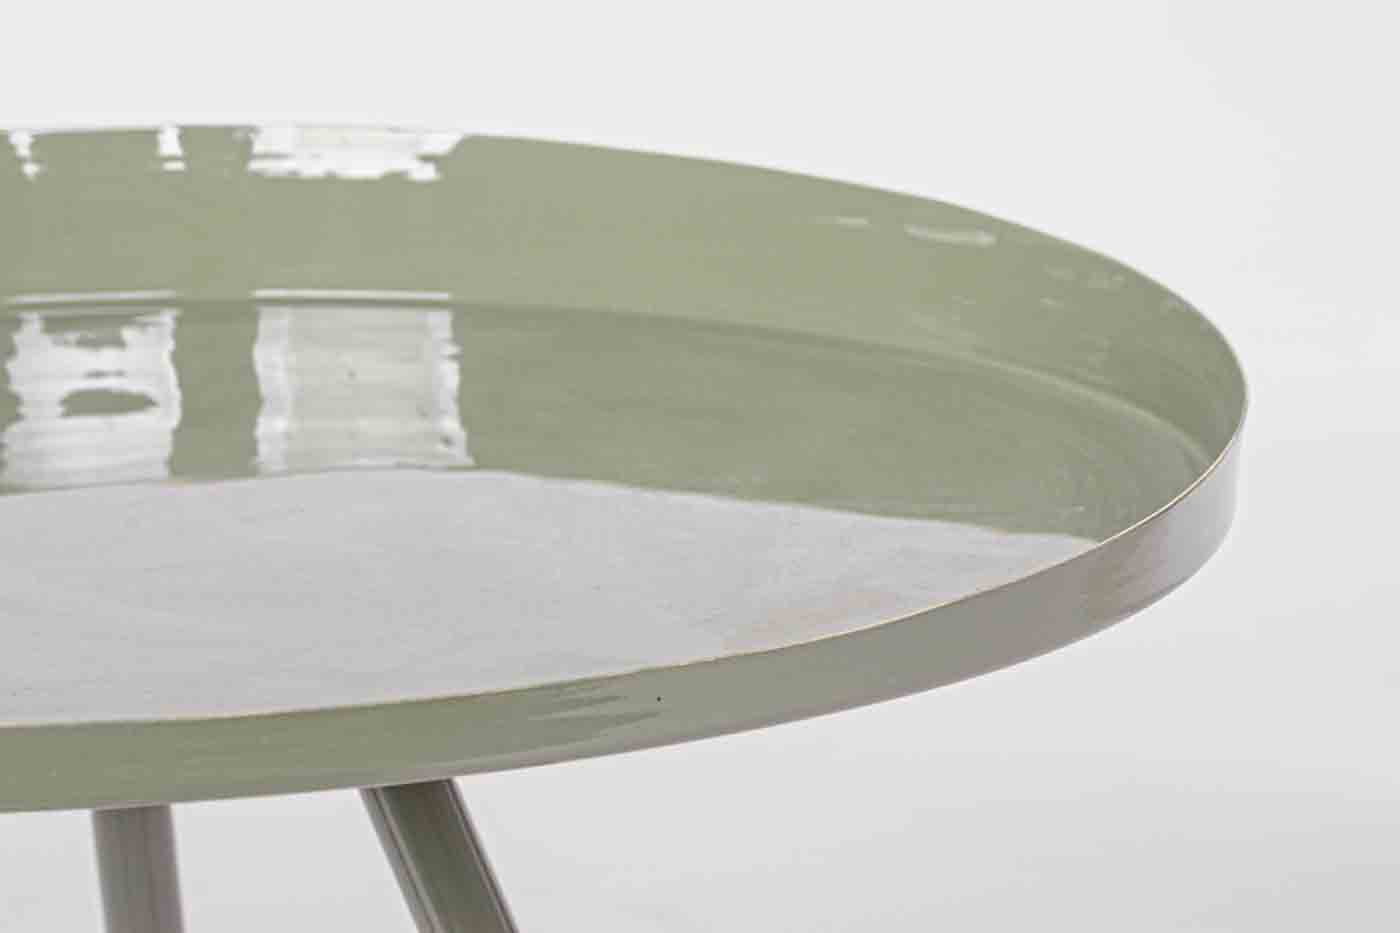 Beistelltisch Anchita gefertigt aus Metall in einem salbeigrünen Farbton. Modernes Design. Marke Bizotto.